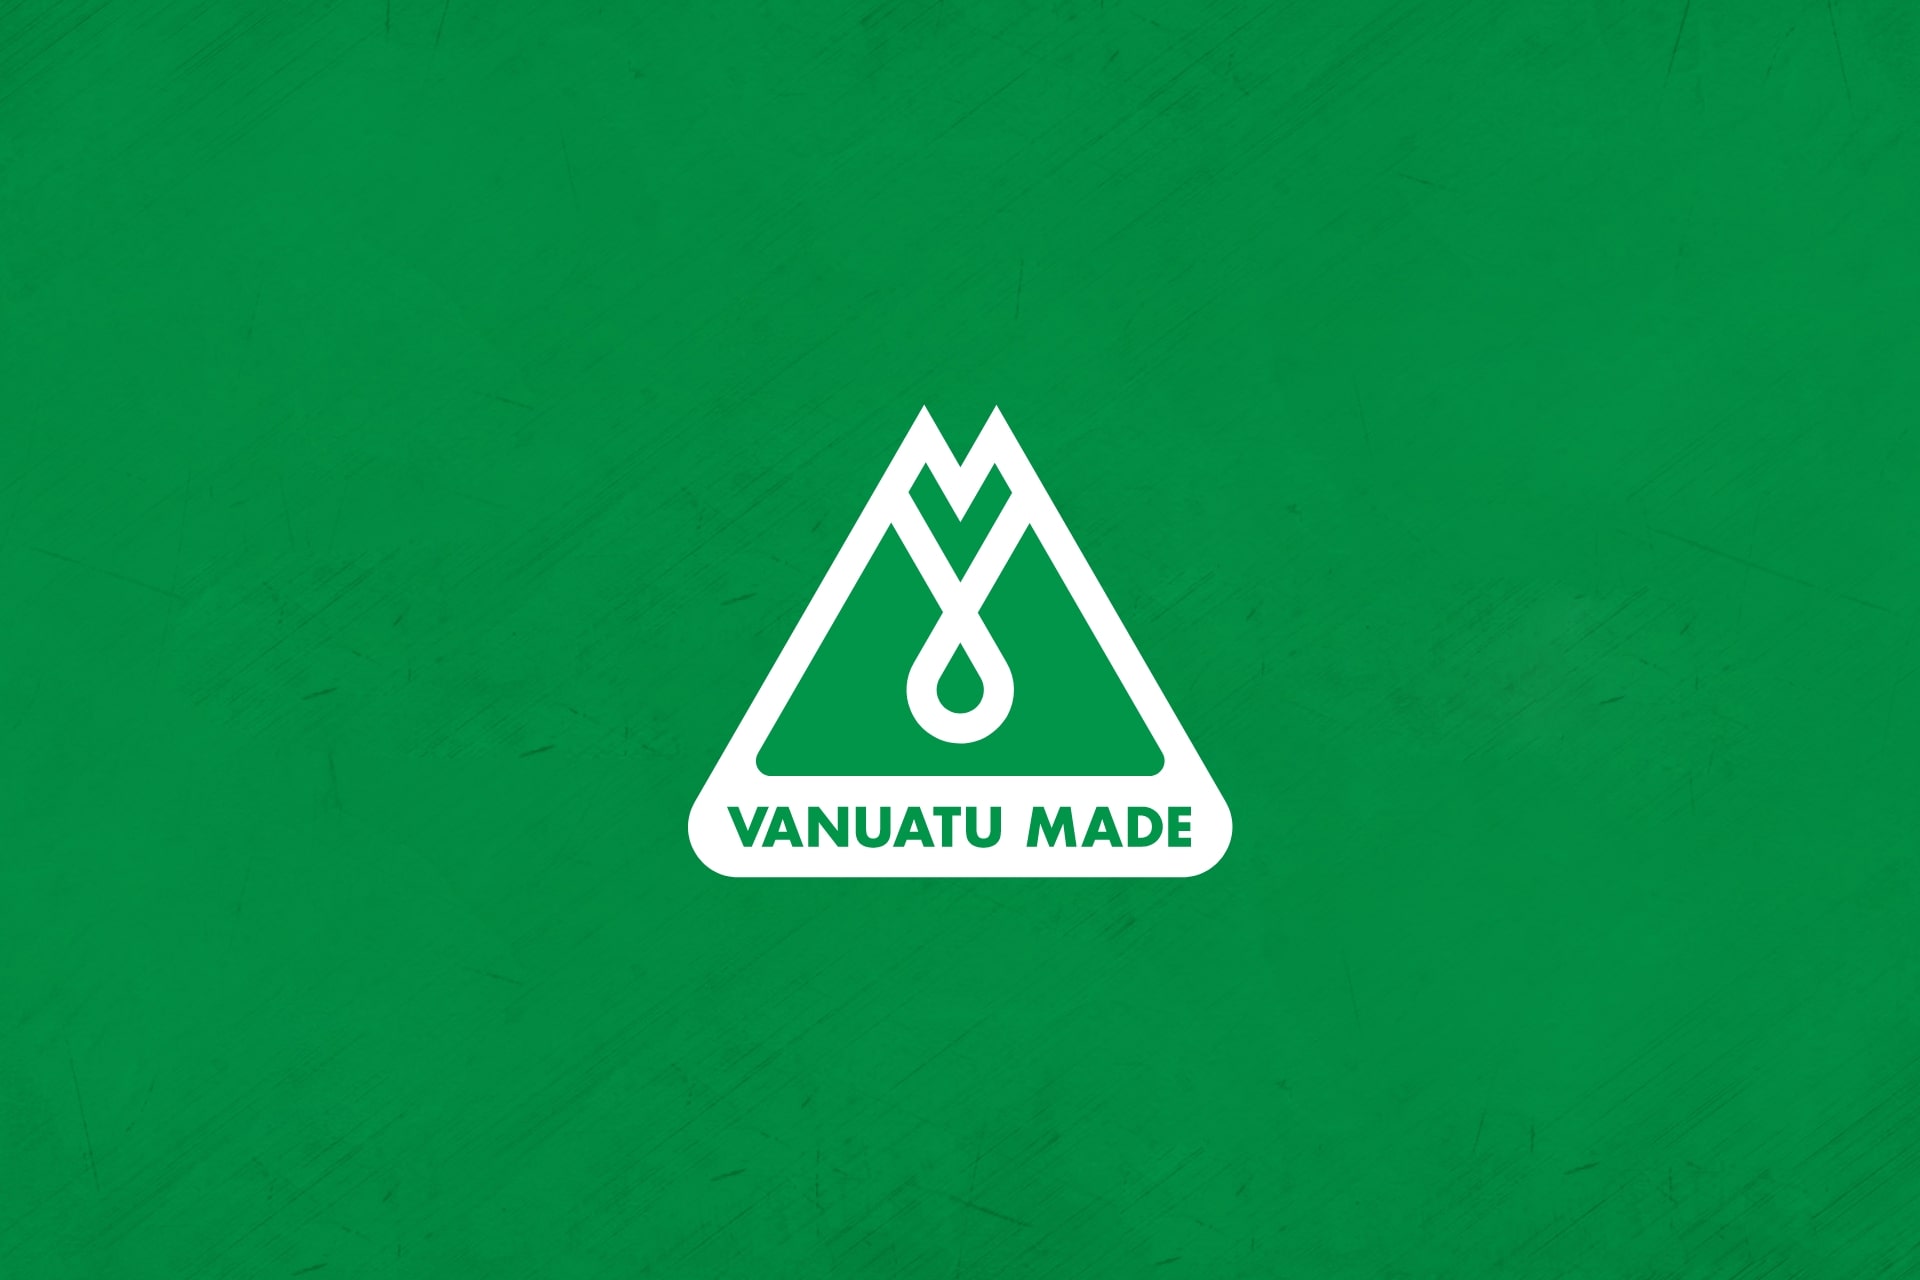 Vanuatu Made